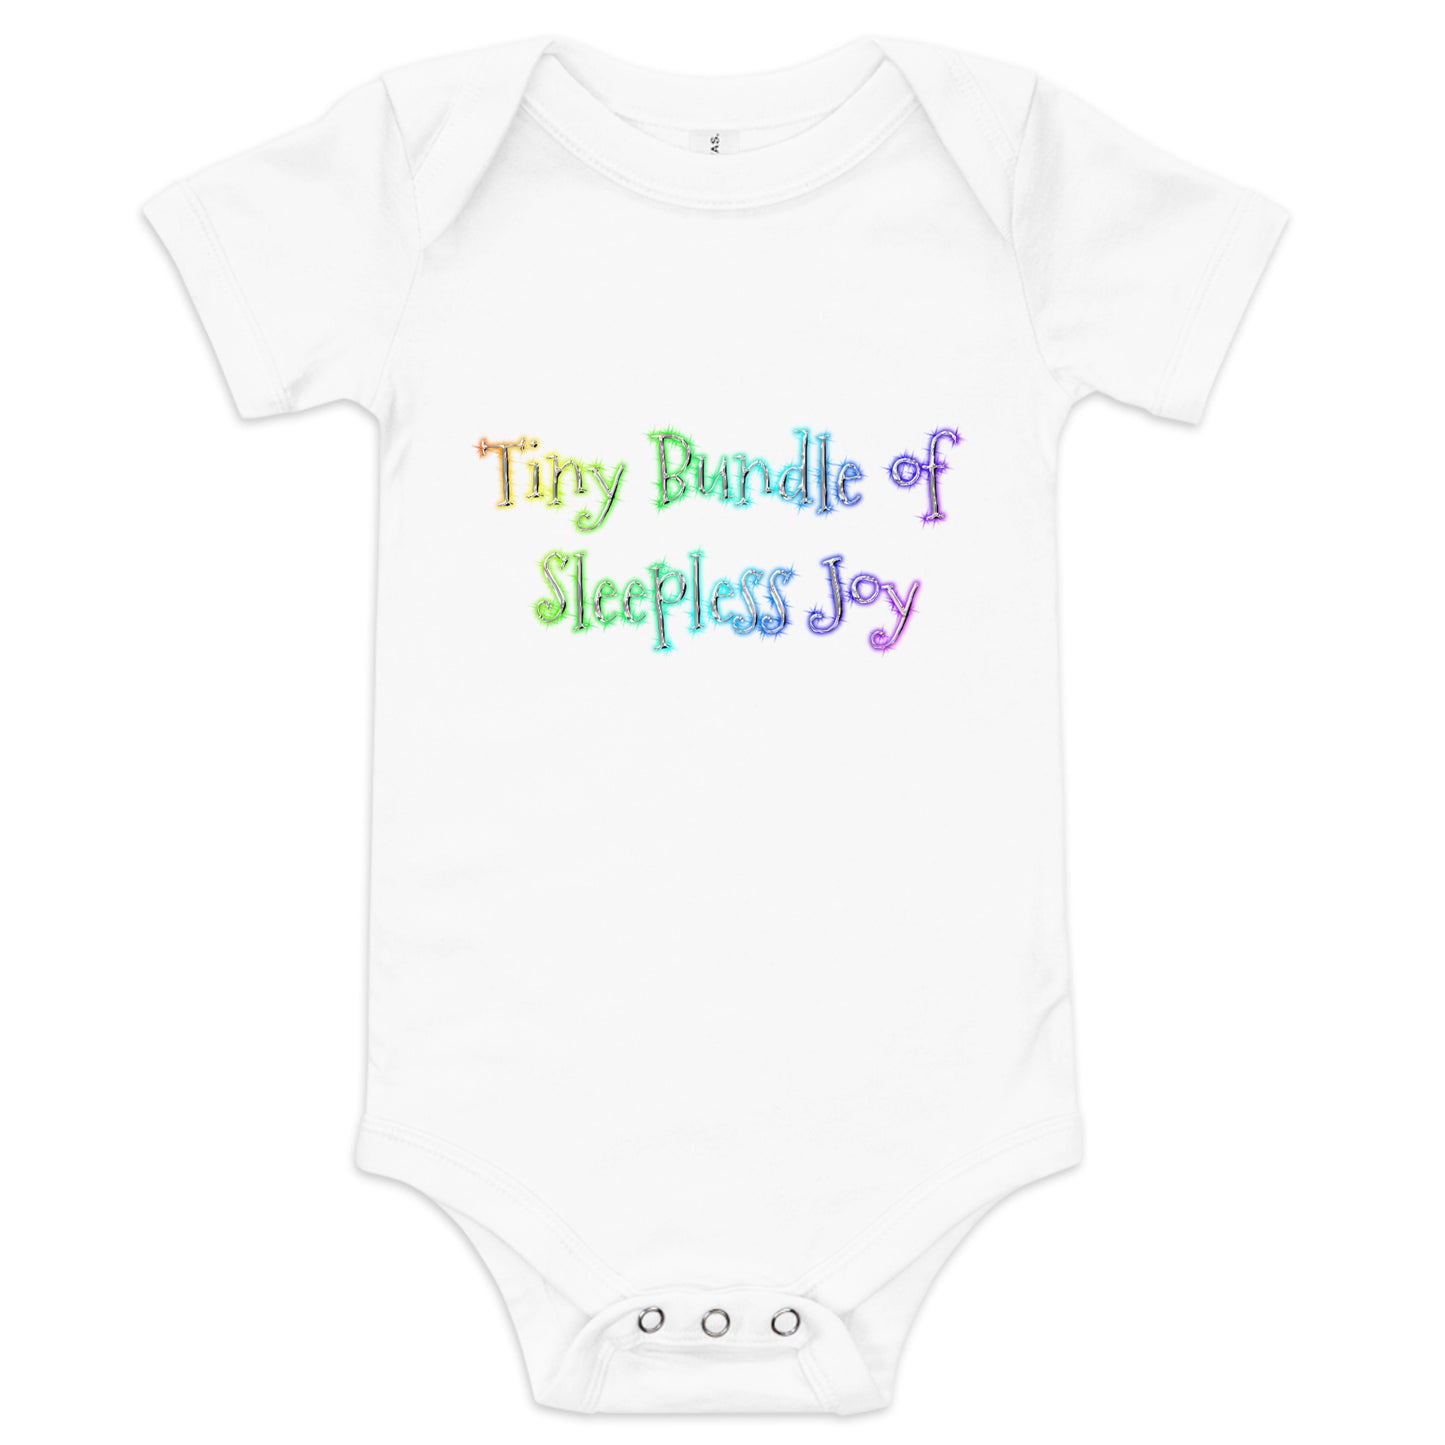 Tiny Bundle of Sleepless Joy Baby Bodysuit